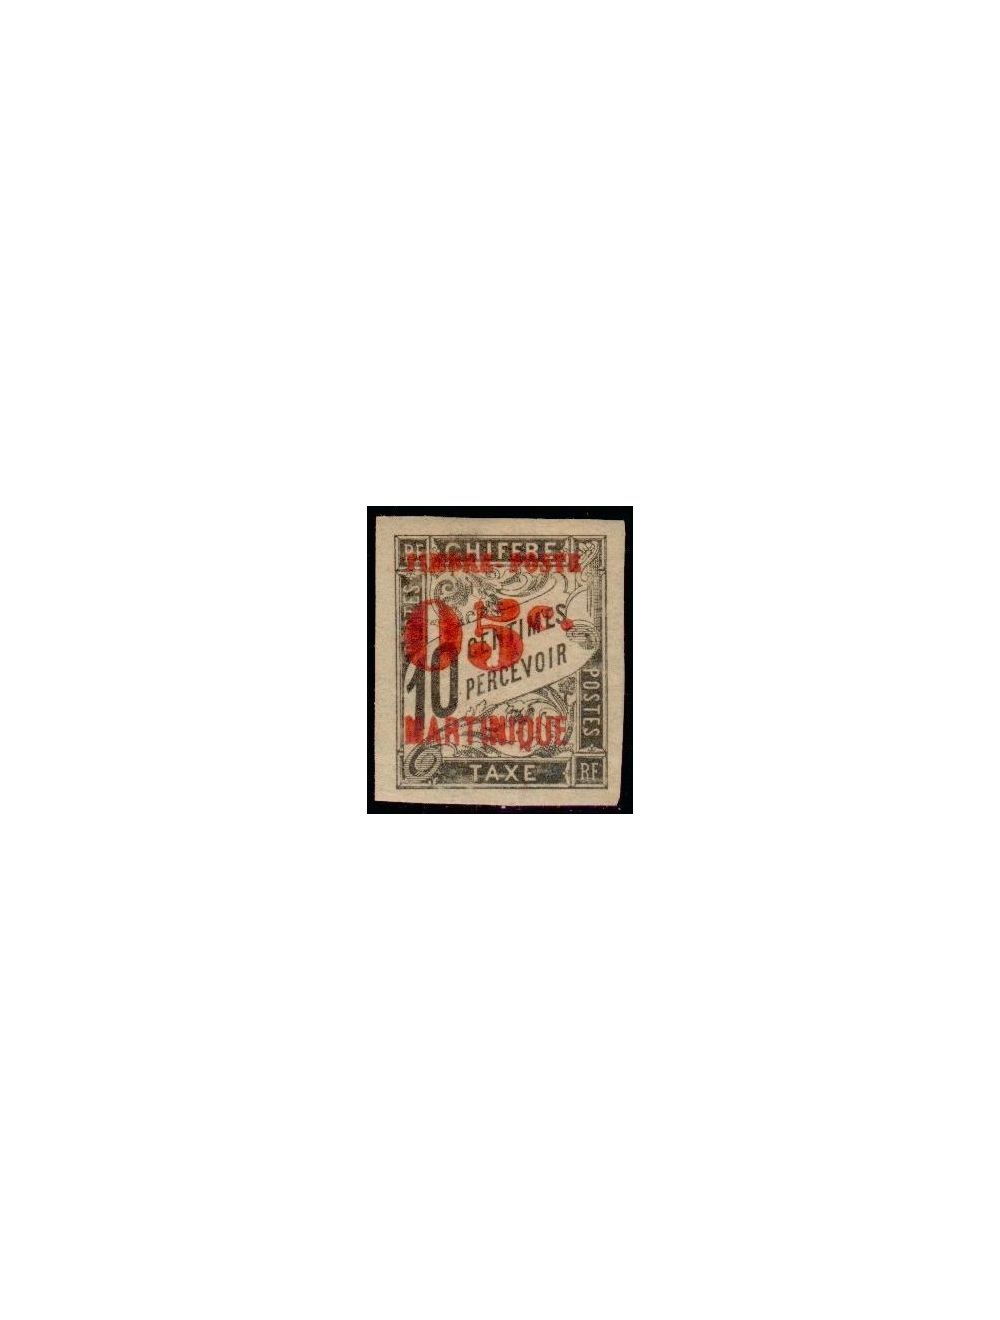 Martinique timbre-poste N°92a variété neuf**. - Philantologie